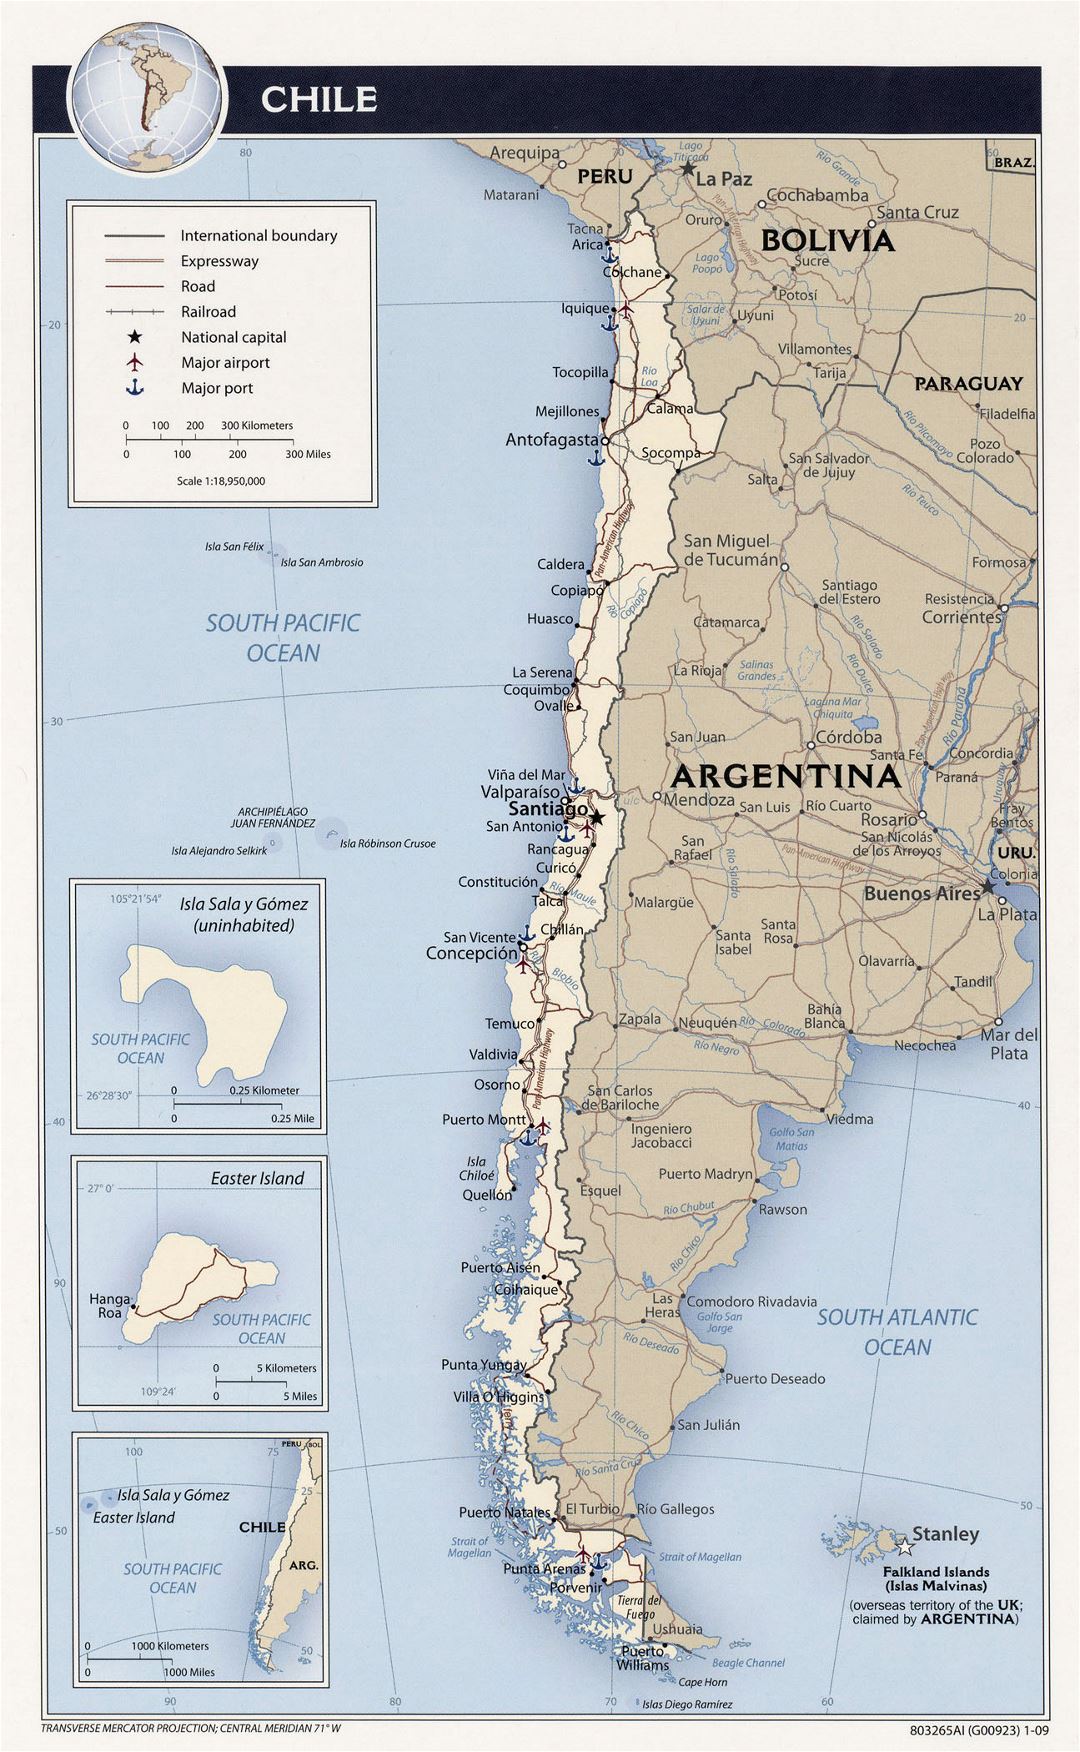 Подробная политическая карта Чили с дорогами, городами, аэропортами и морскими портами - 2009